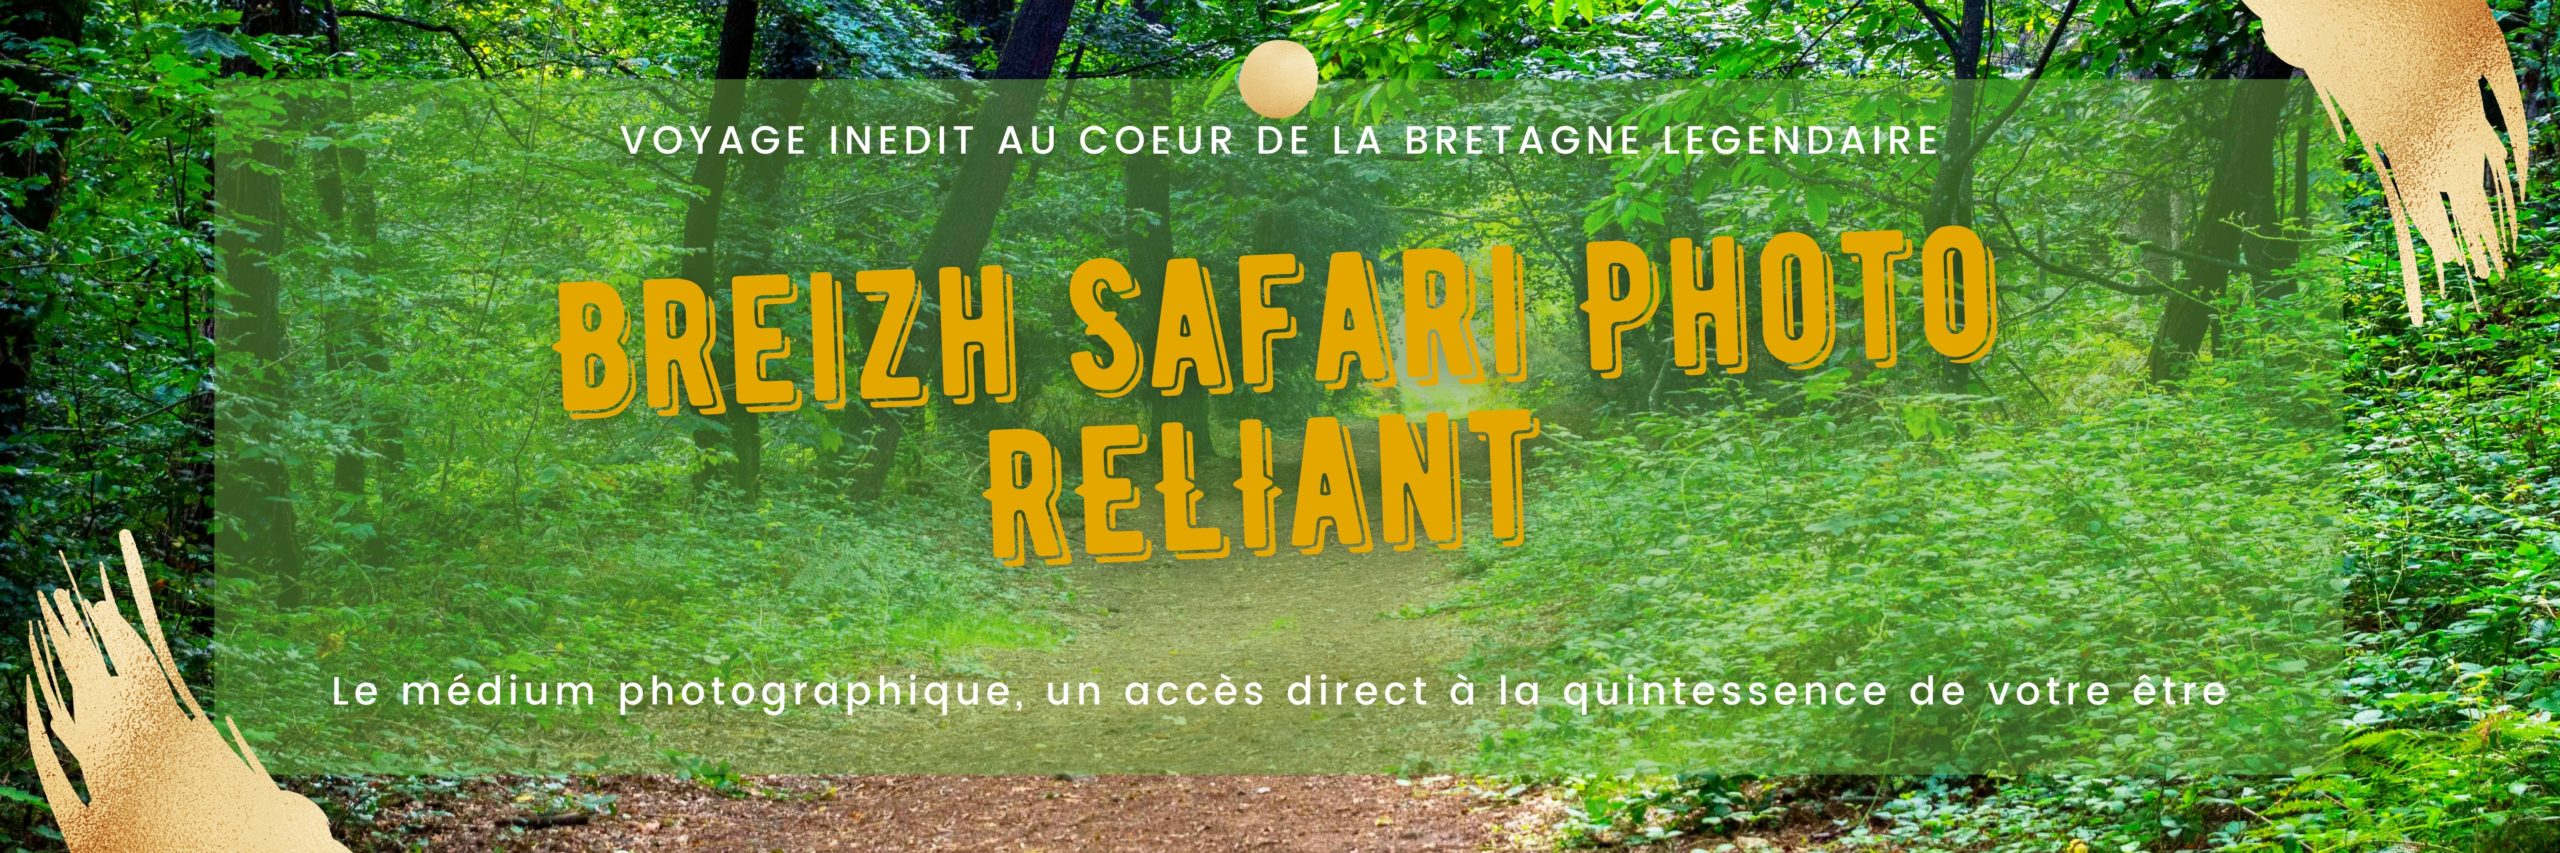 Breizh Safari Photo Reliant guy coste céline vincent